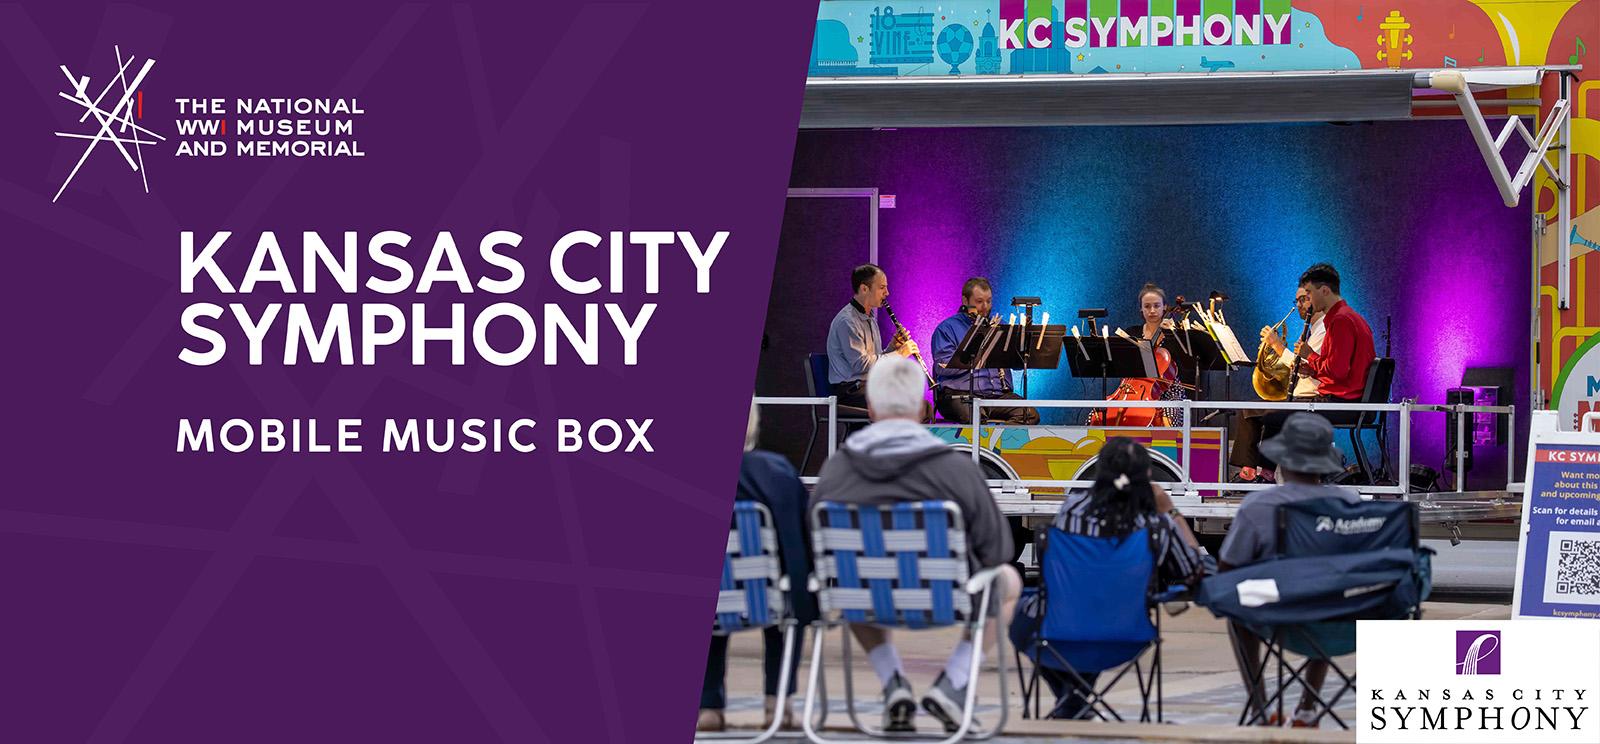 စင်မြင့်ပေါ်တွင် သယ်ဆောင်ရလွယ်ကူသော စင်မြင့်ပေါ်တွင် တေးဂီတသမားများစွာ၏ ခေတ်မီဓာတ်ပုံကို ပန်းရောင်နှင့် စိမ်းပြာရောင်တို့ဖြင့် ထွန်းညှိထားသည့် ပရိသတ်များသည် စခန်းထိုင်ခုံများရှေ့တွင် ထိုင်နေကြသည့် ပရိသတ်များဖြစ်သည်။ စာသား- 'Kansas City Symphony / Mobile Music Box'